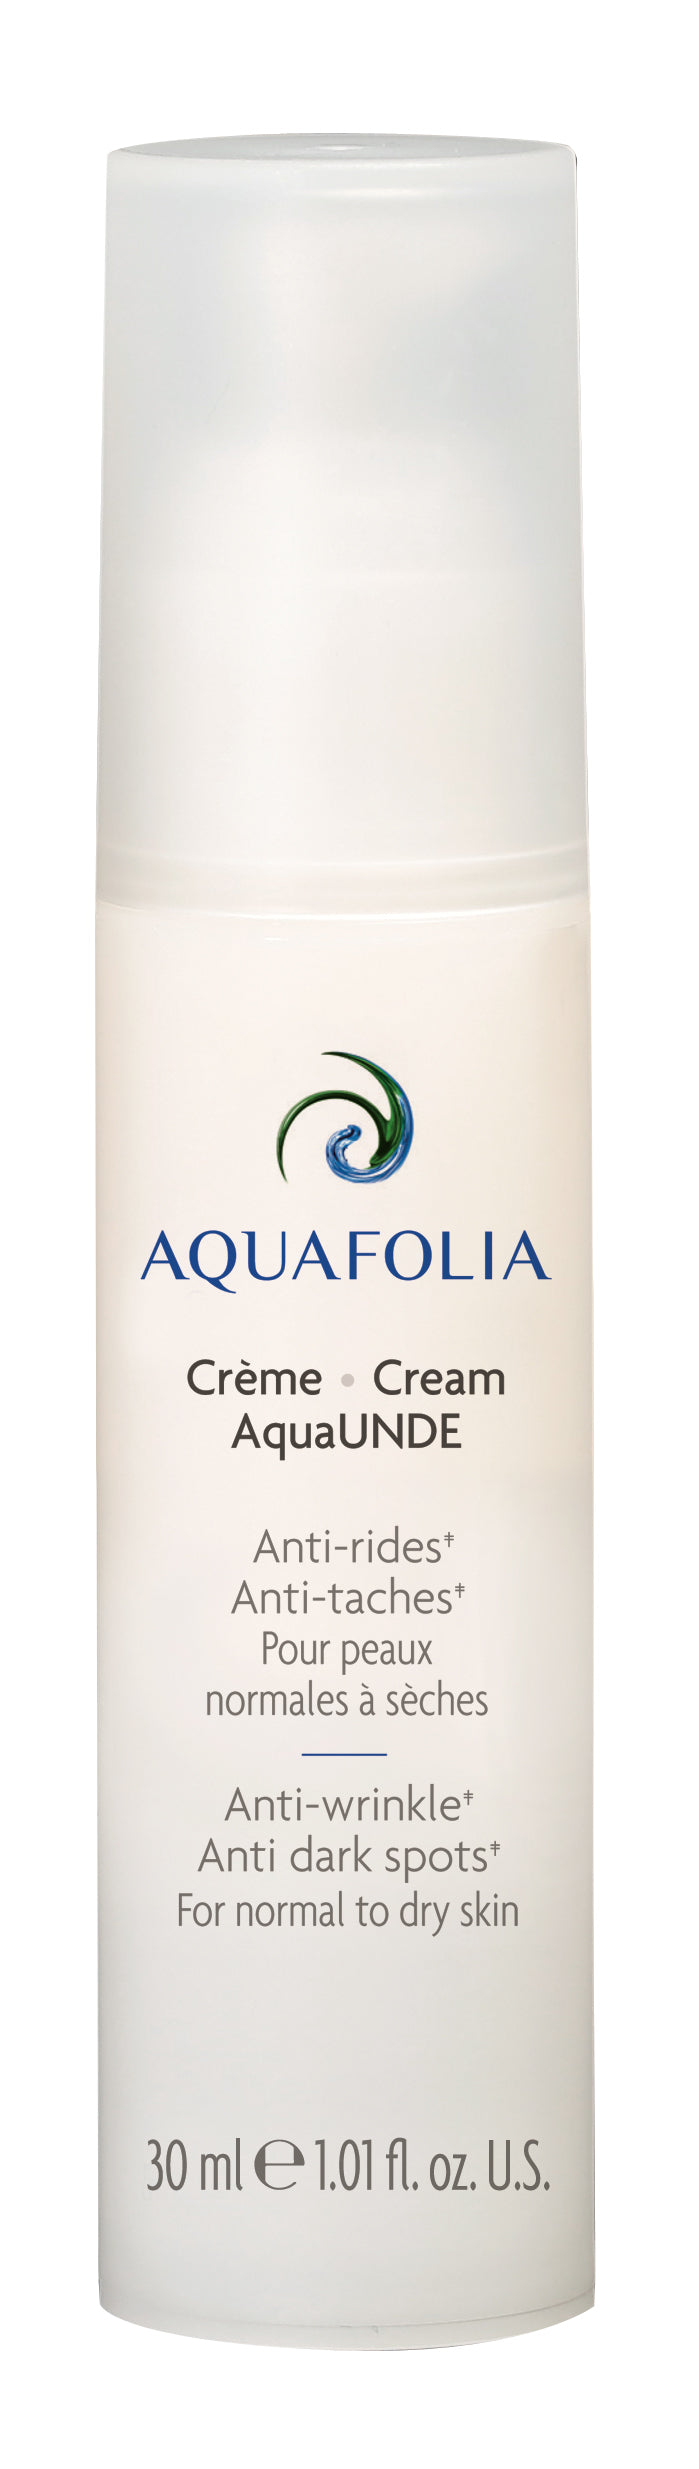 Aquafolia-AquaUNDE Cream- AquaUNDE Concept